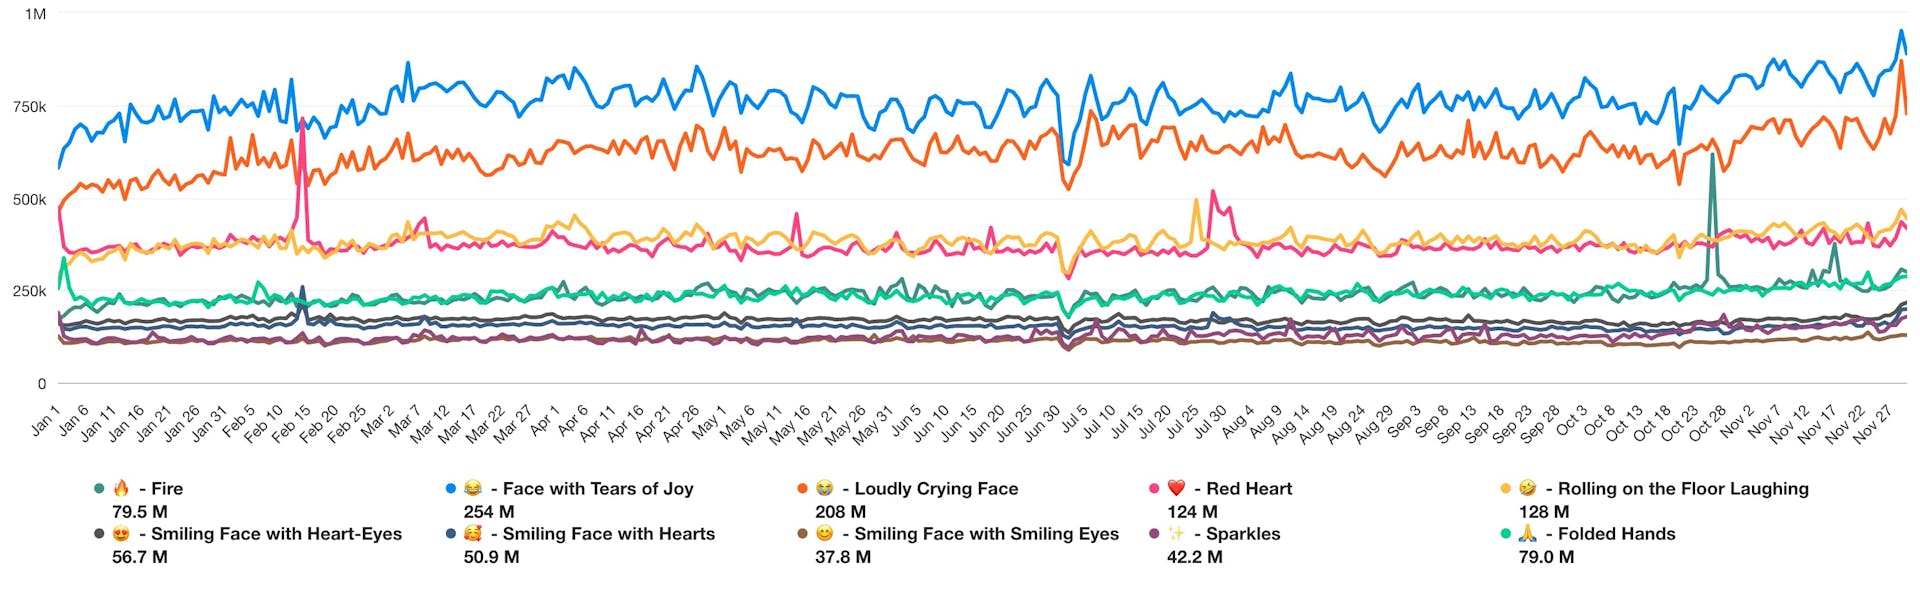 Graphique linéaire montrant le volume des mentions d'emojis au cours de l'année 2023.